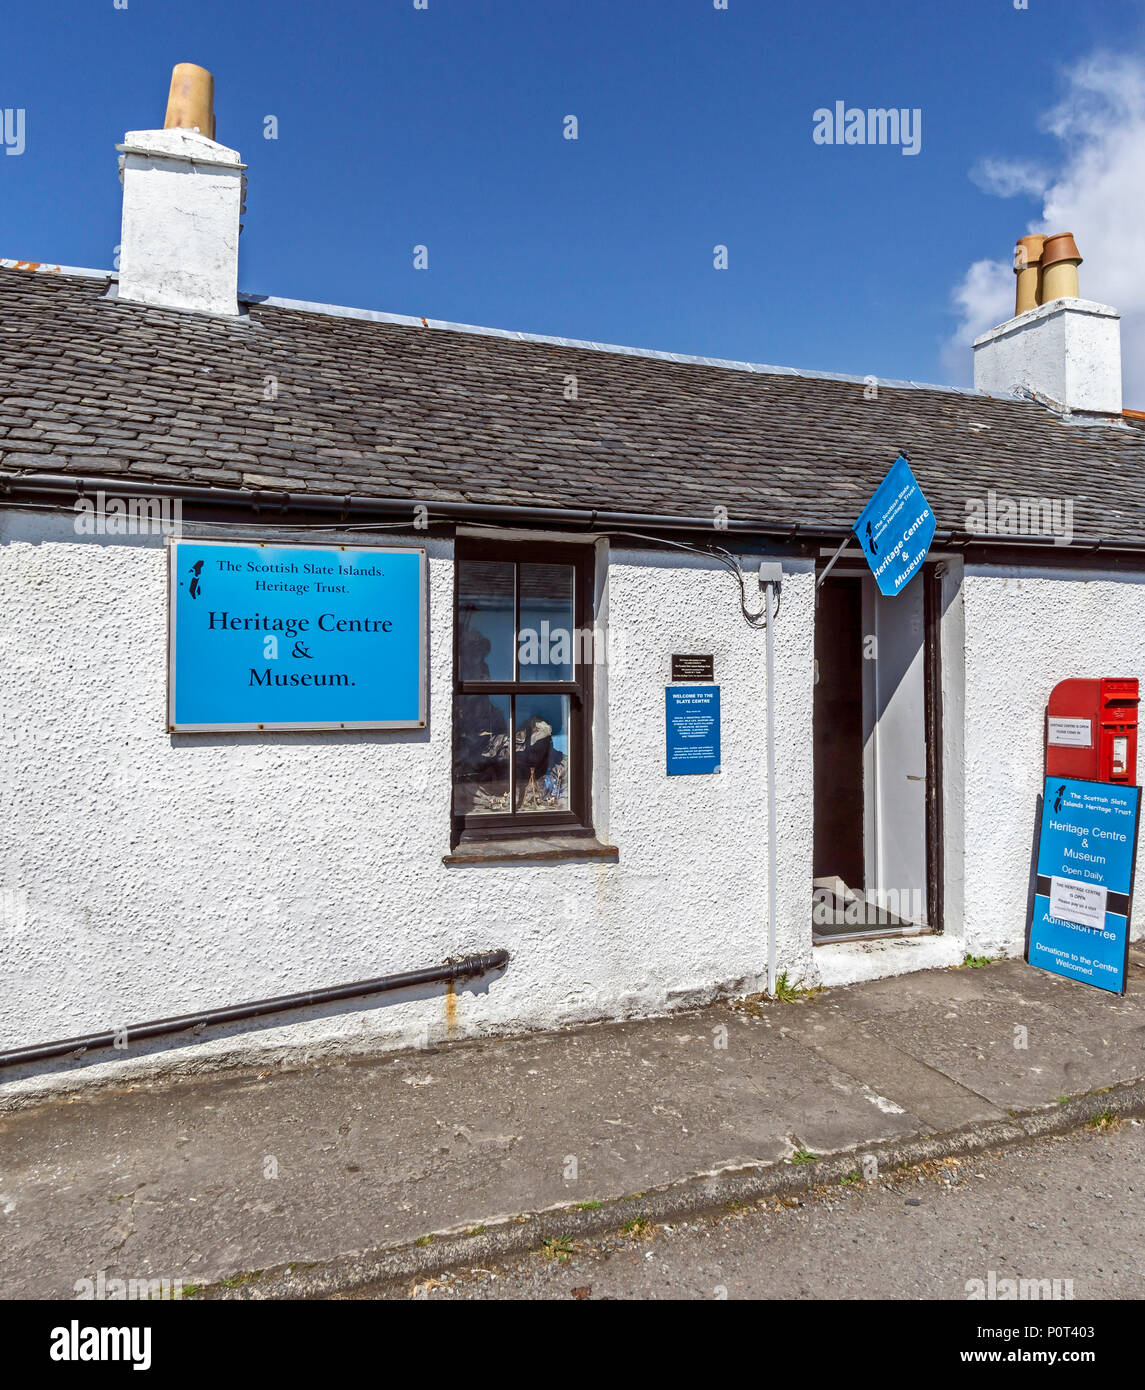 Der schottische Schiefer Inseln Heritage Trust Heritage Center & Museum Dorf Easdale auf der Insel Seil südlich von Oban, Argyll & Bute Schottland Großbritannien Stockfoto